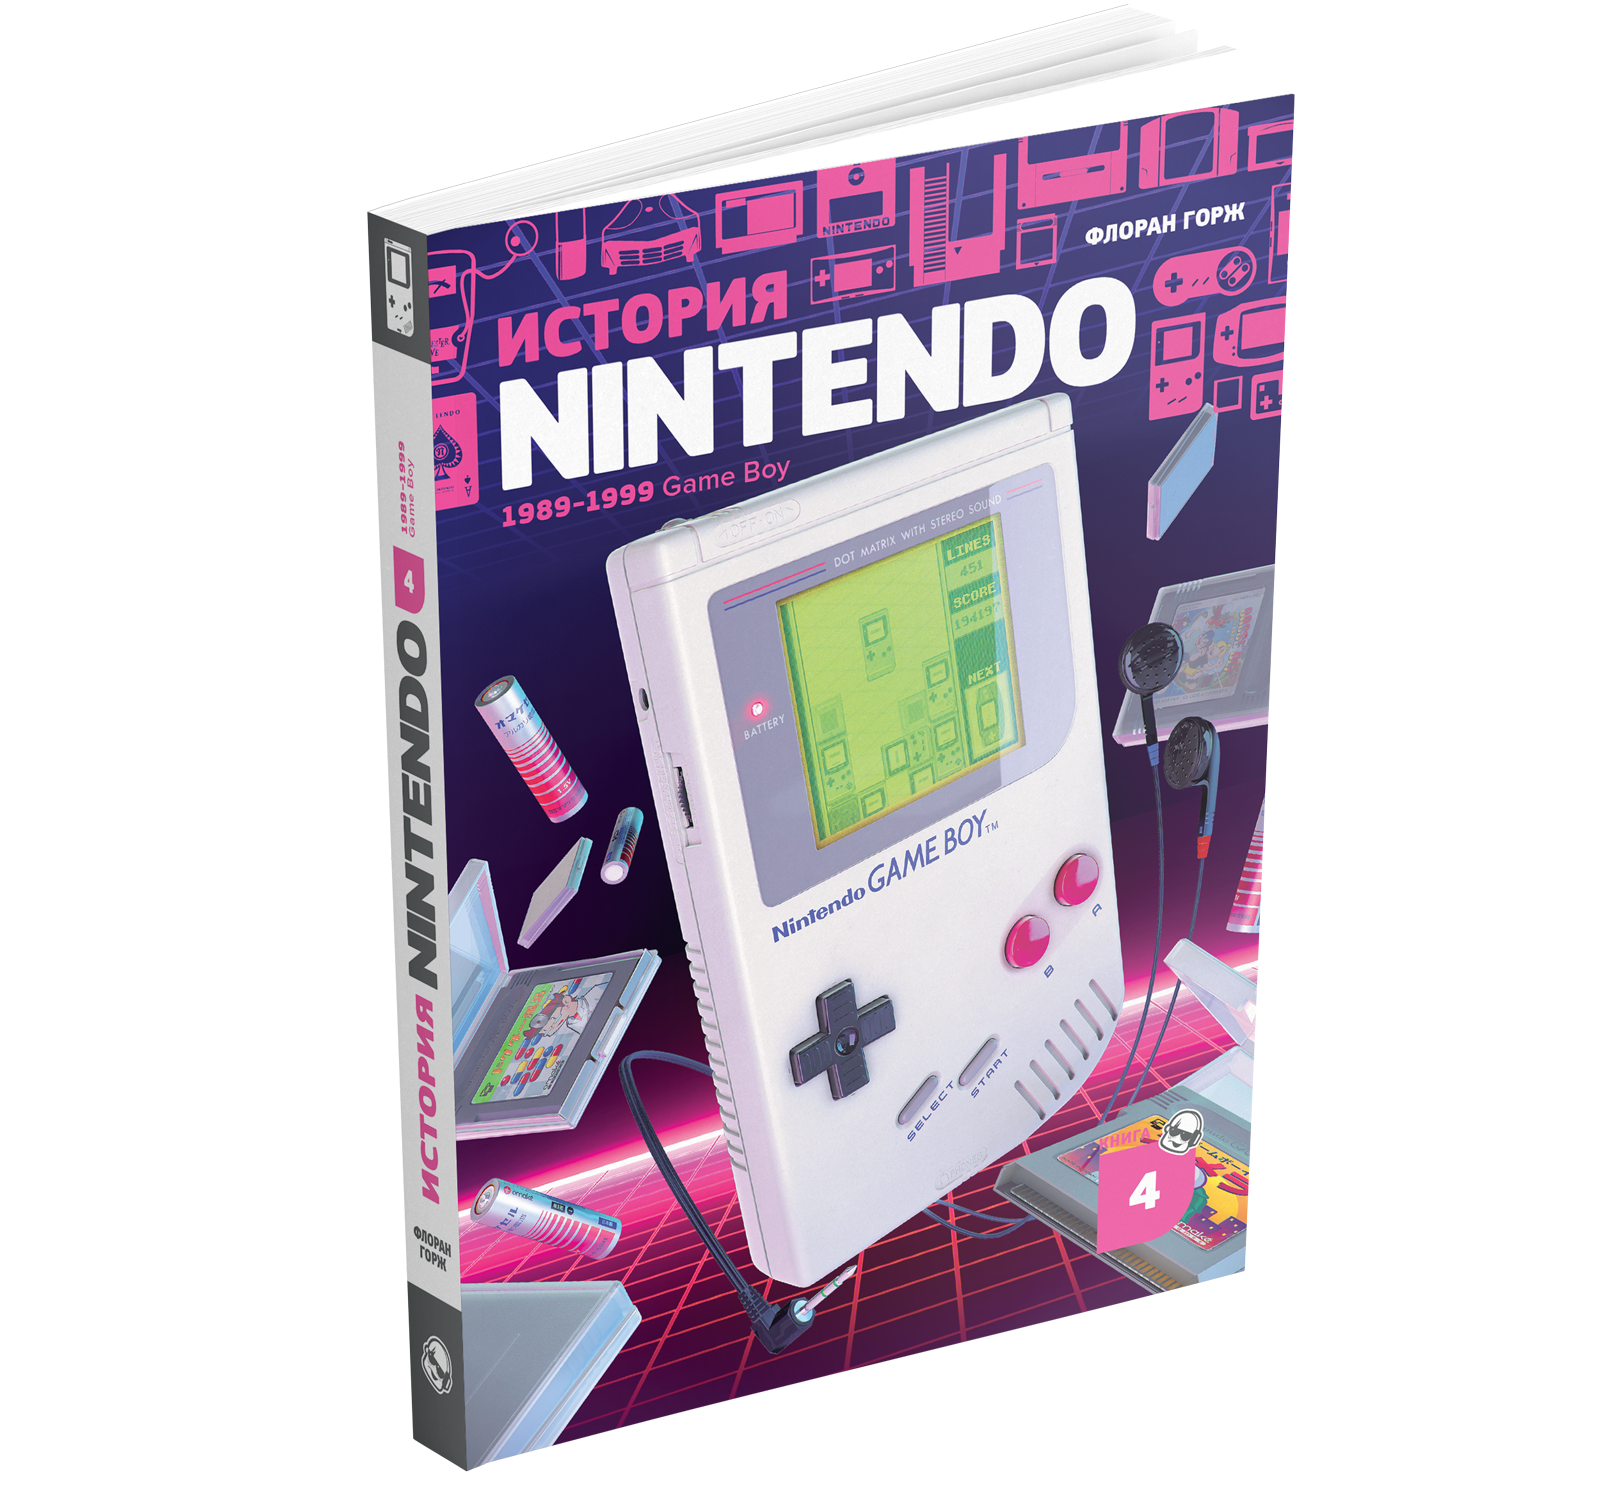 Nintendo книжка. История Nintendo книга. История Нинтендо. История Nintendo книга 4. Открой nintendo